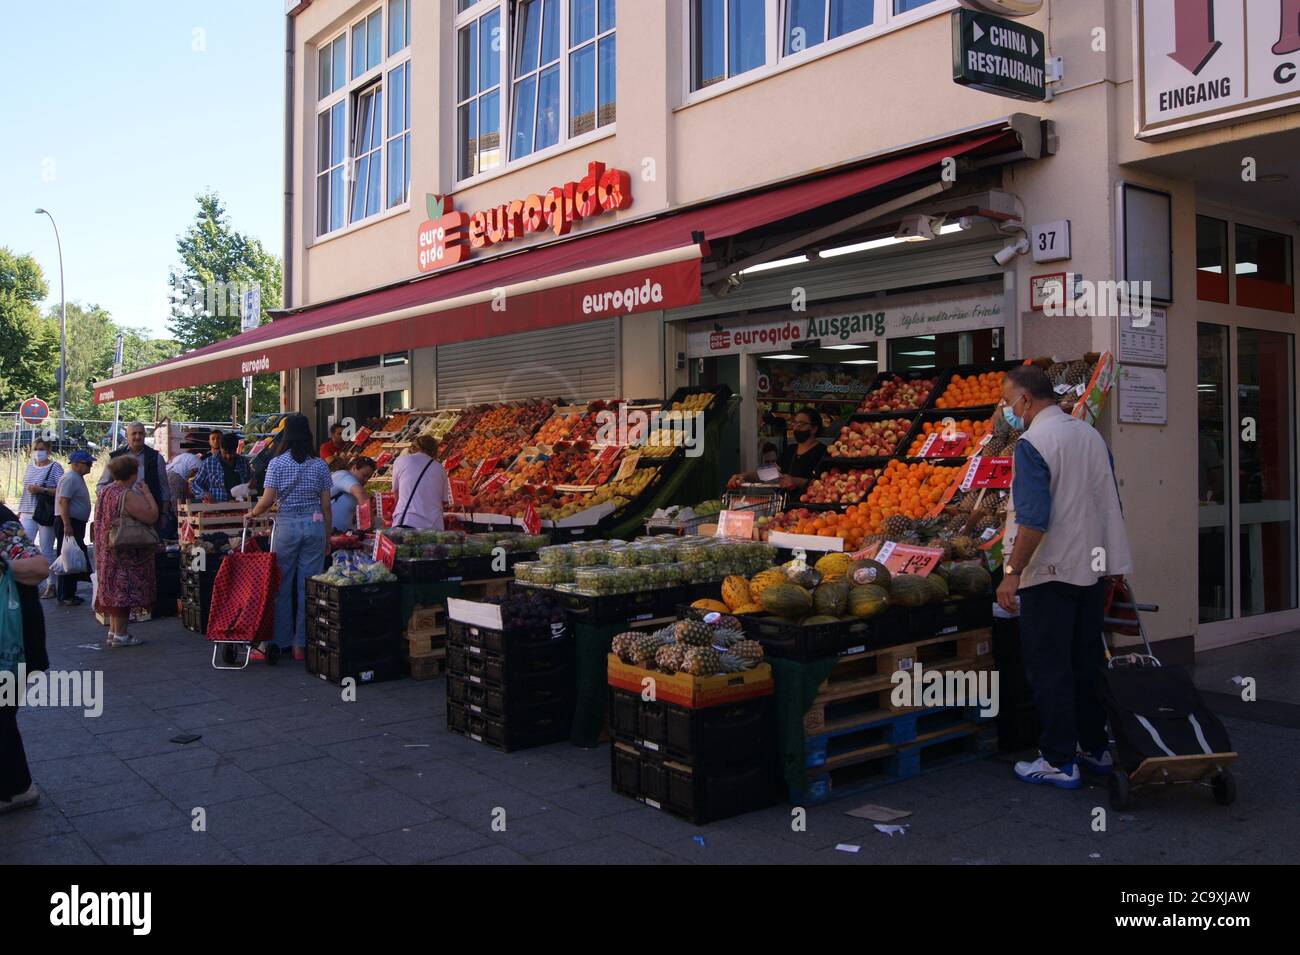 Supermarktkette eurogida, die überwiegend türkische Spezialitäten im Sortiment führt, en der Breiten Straße en Berlín-Spandau Foto de stock